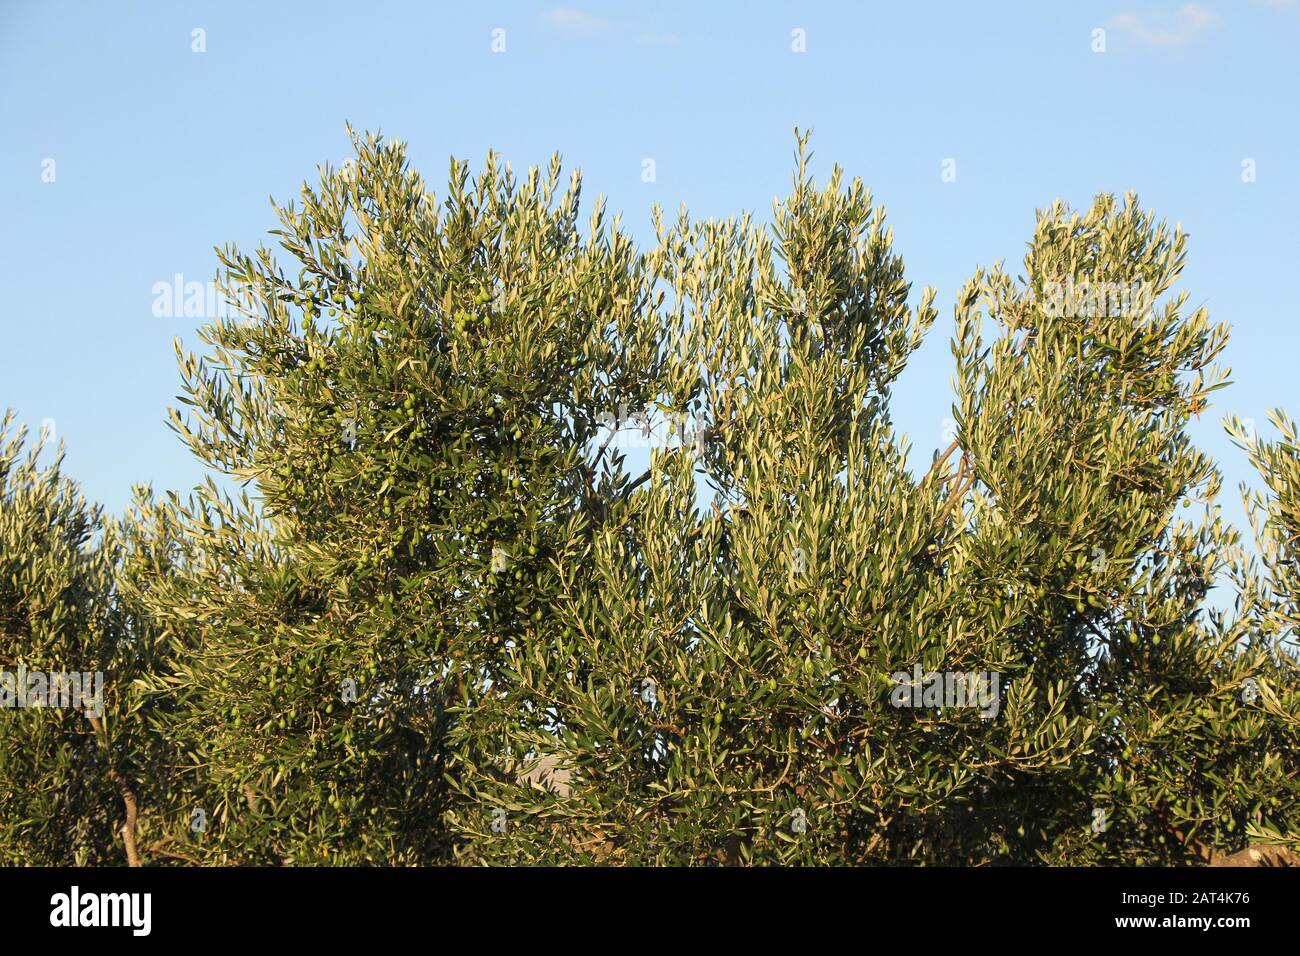 Plantation d'oliviers, branches d'oliviers avec beaucoup d'olives dessus Banque D'Images